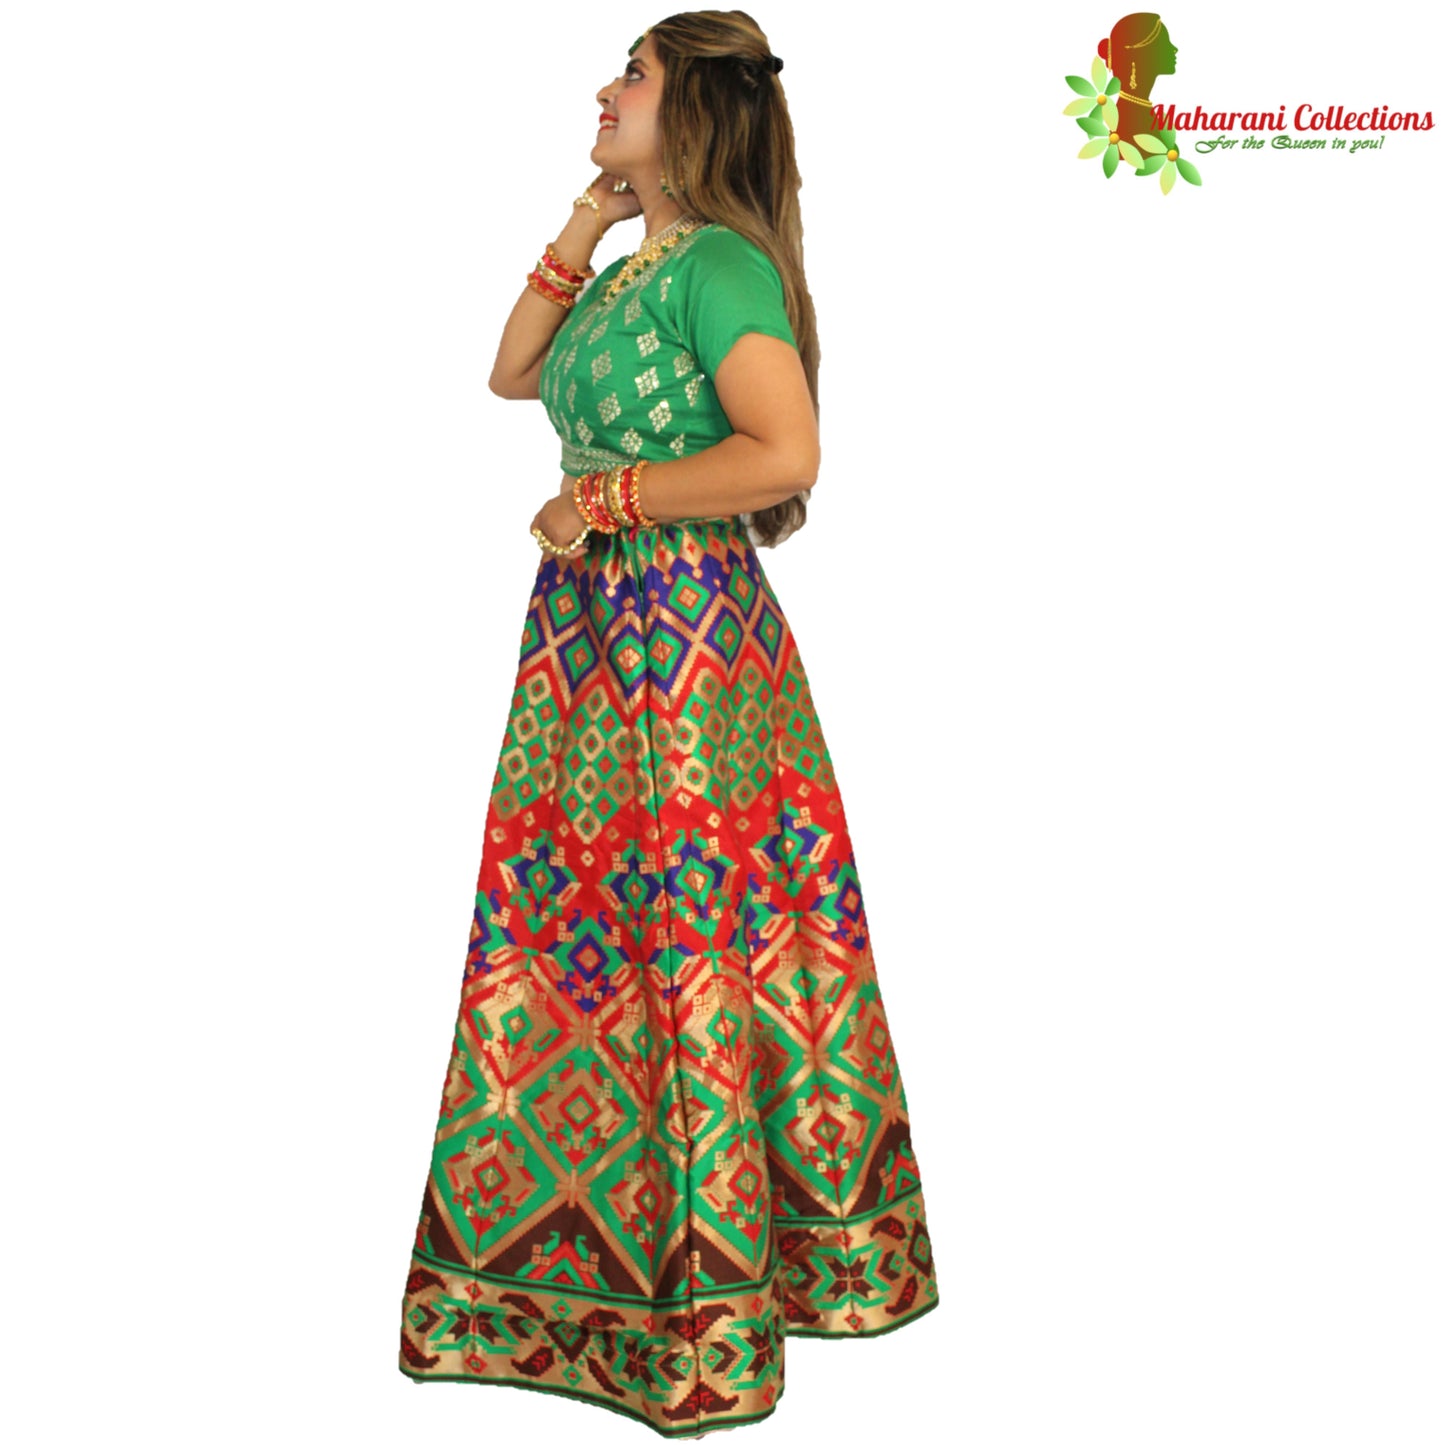 Maharani's Designer Pure Banarasi Silk Lehenga - Green and Red (M/L)